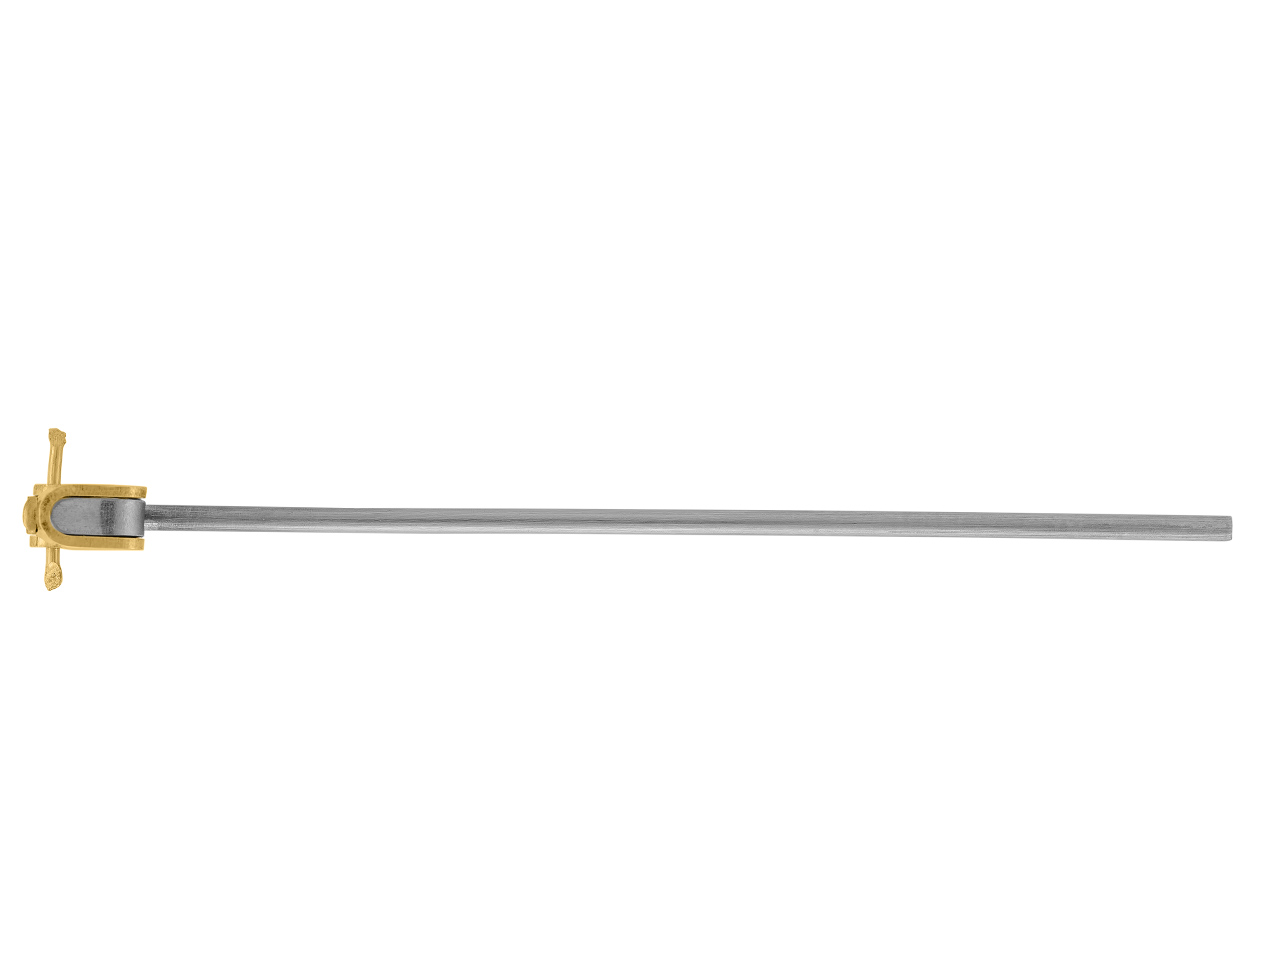 Ag Athena-0815D-Combinaison de tige en acier inoxydable et corde